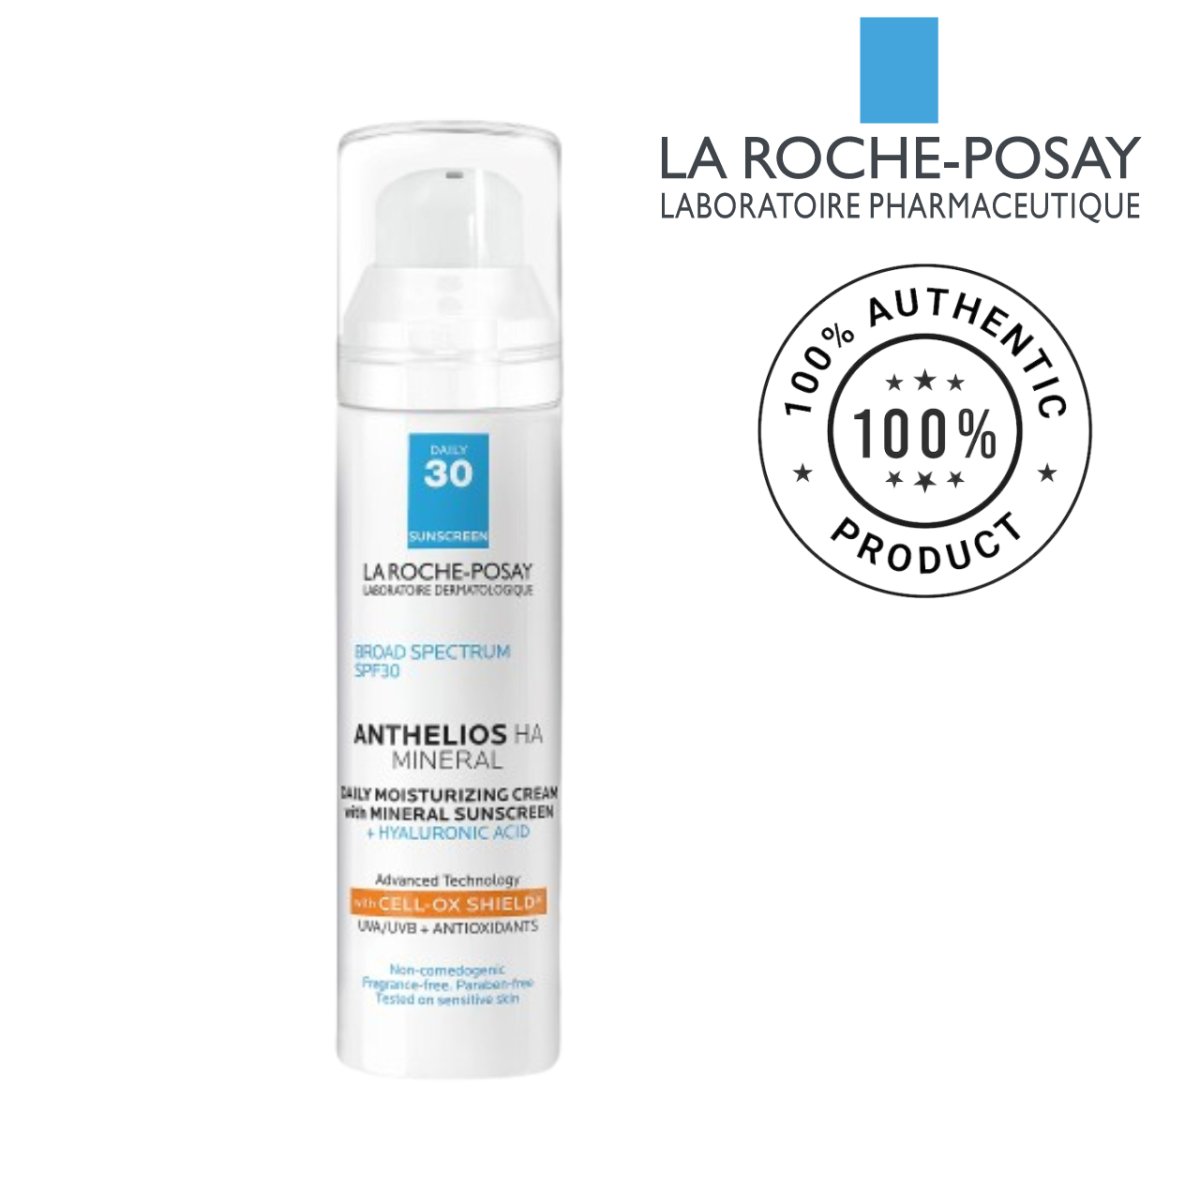 LA ROCHE POSAY Anthelios HA 100% Mineral Sunscreen Moisturizer- SPF 30